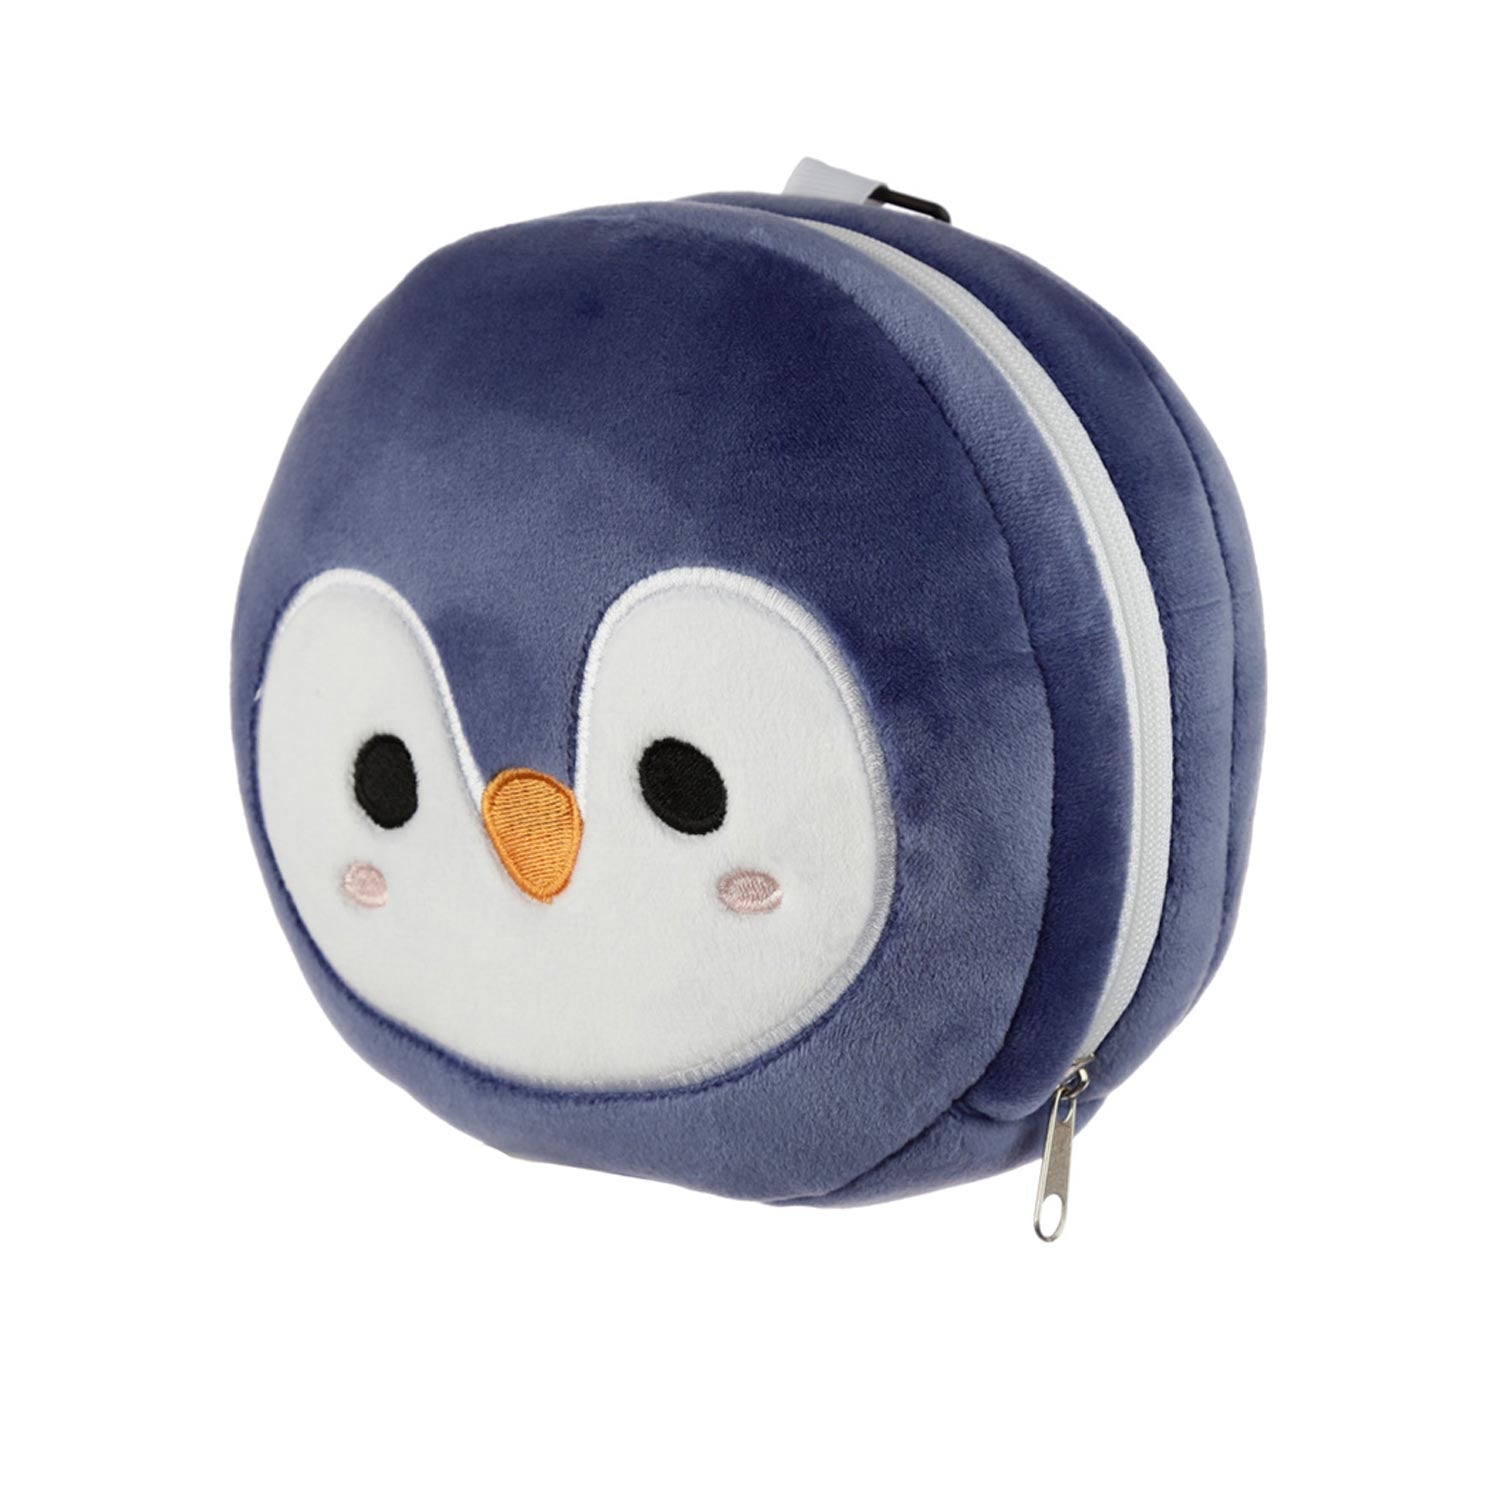 Penguin Travel Pillow & Eye Mask side